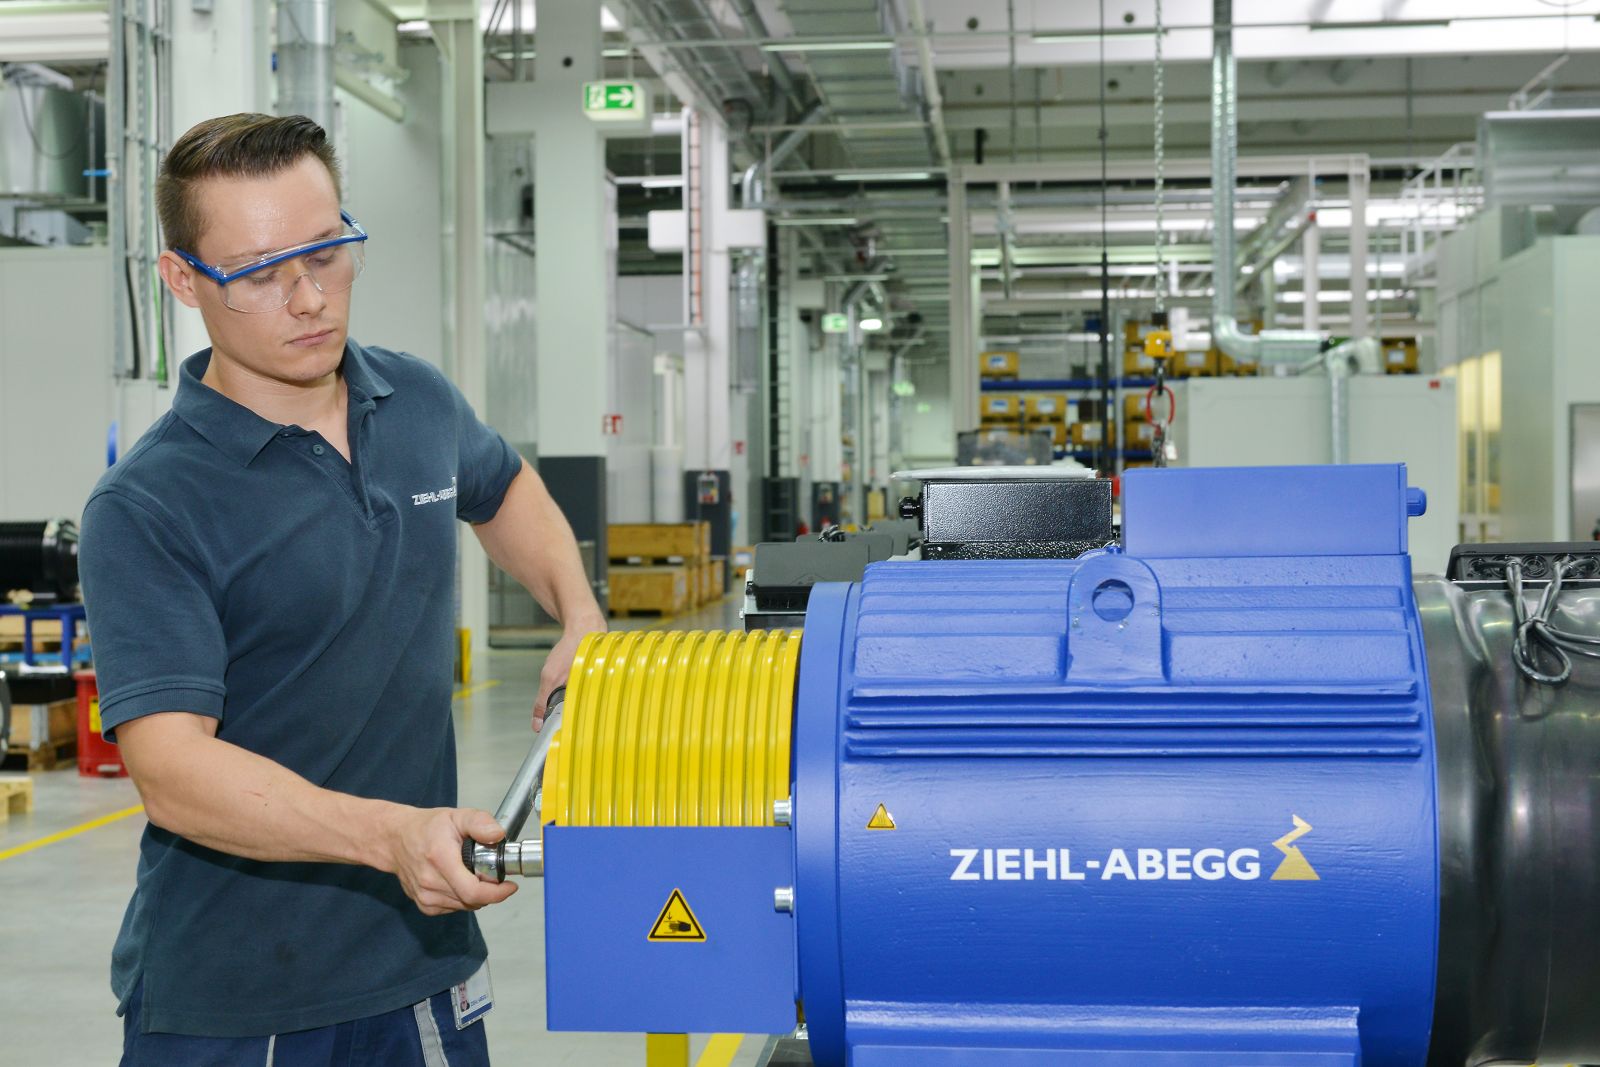 Video thực tế các công trình tham khảo sử dụng máy kéo của ZIEHL-ABEGG, Đức